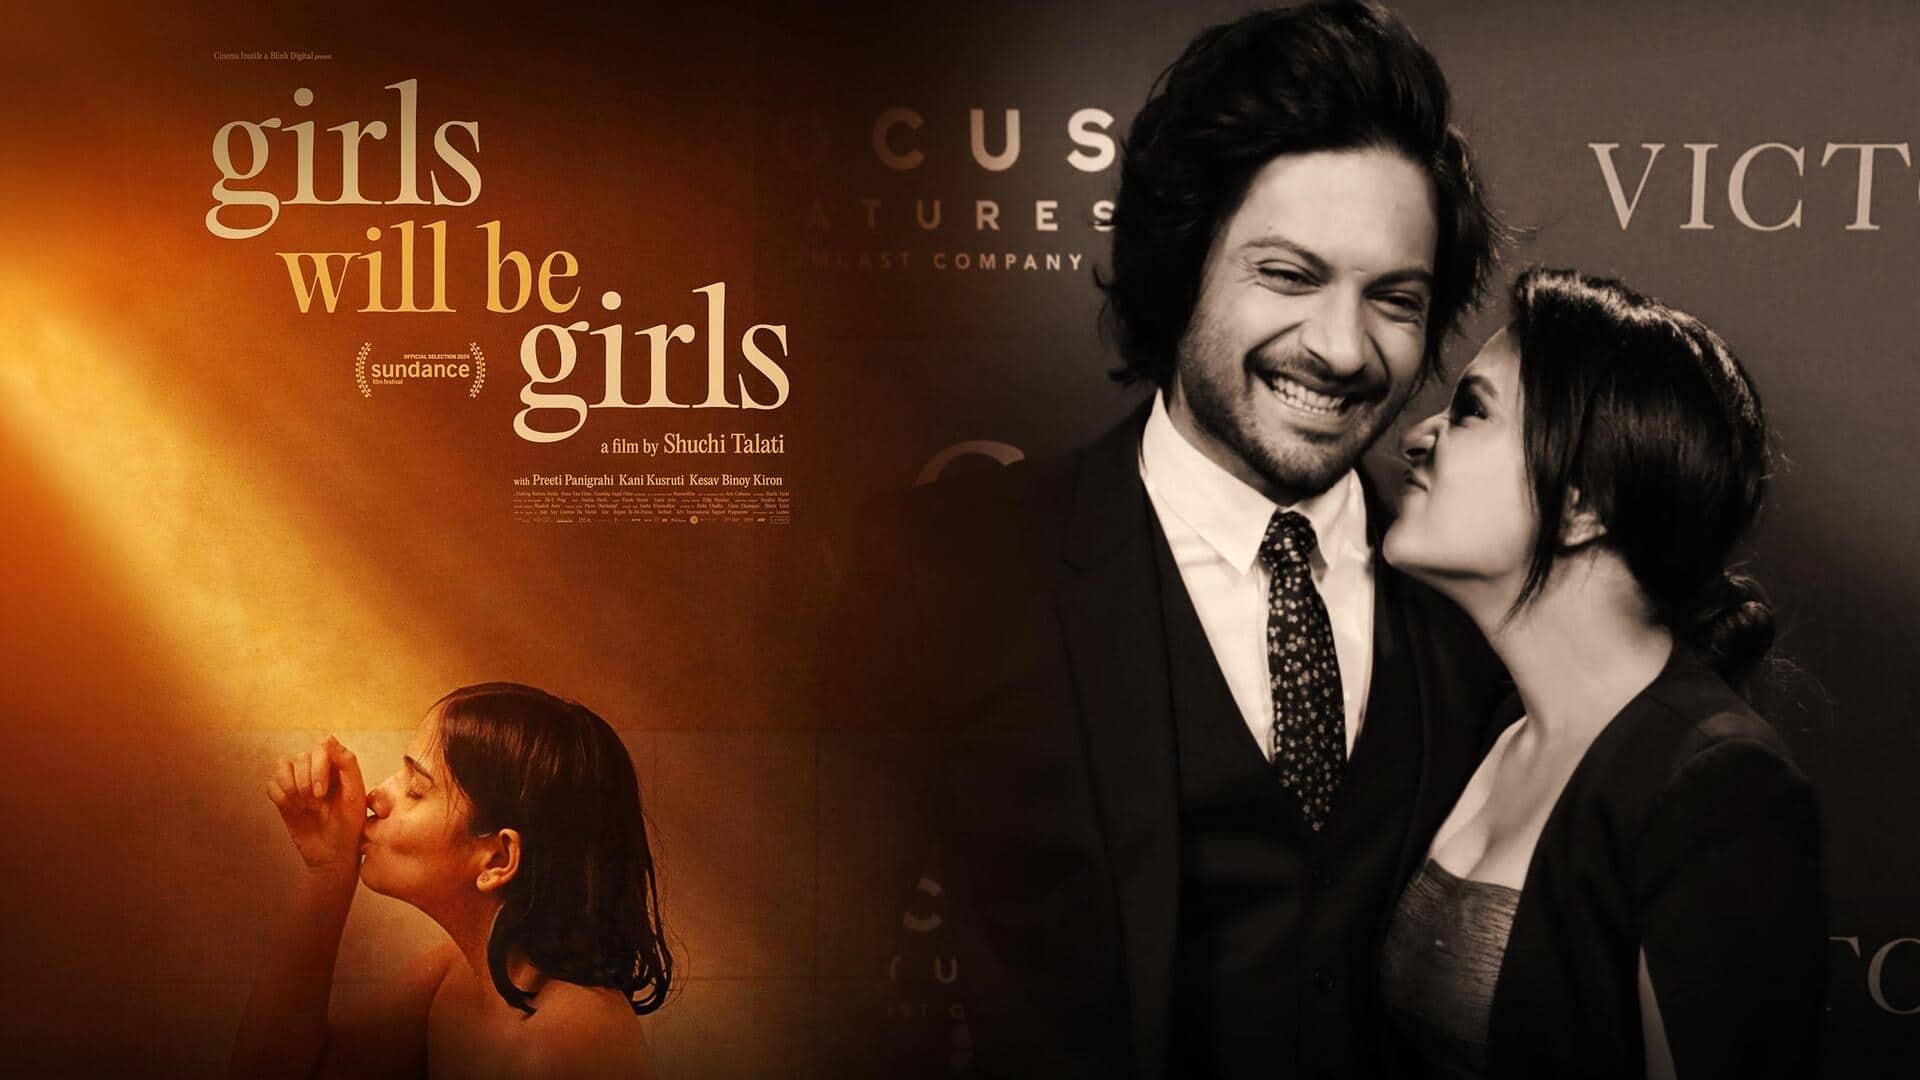 ऋचा-अली की 'गर्ल्स विल बी गर्ल्स' TIFF फिल्म फेस्टिवल में होगी प्रदर्शित, खुशी से झूमे निर्माता